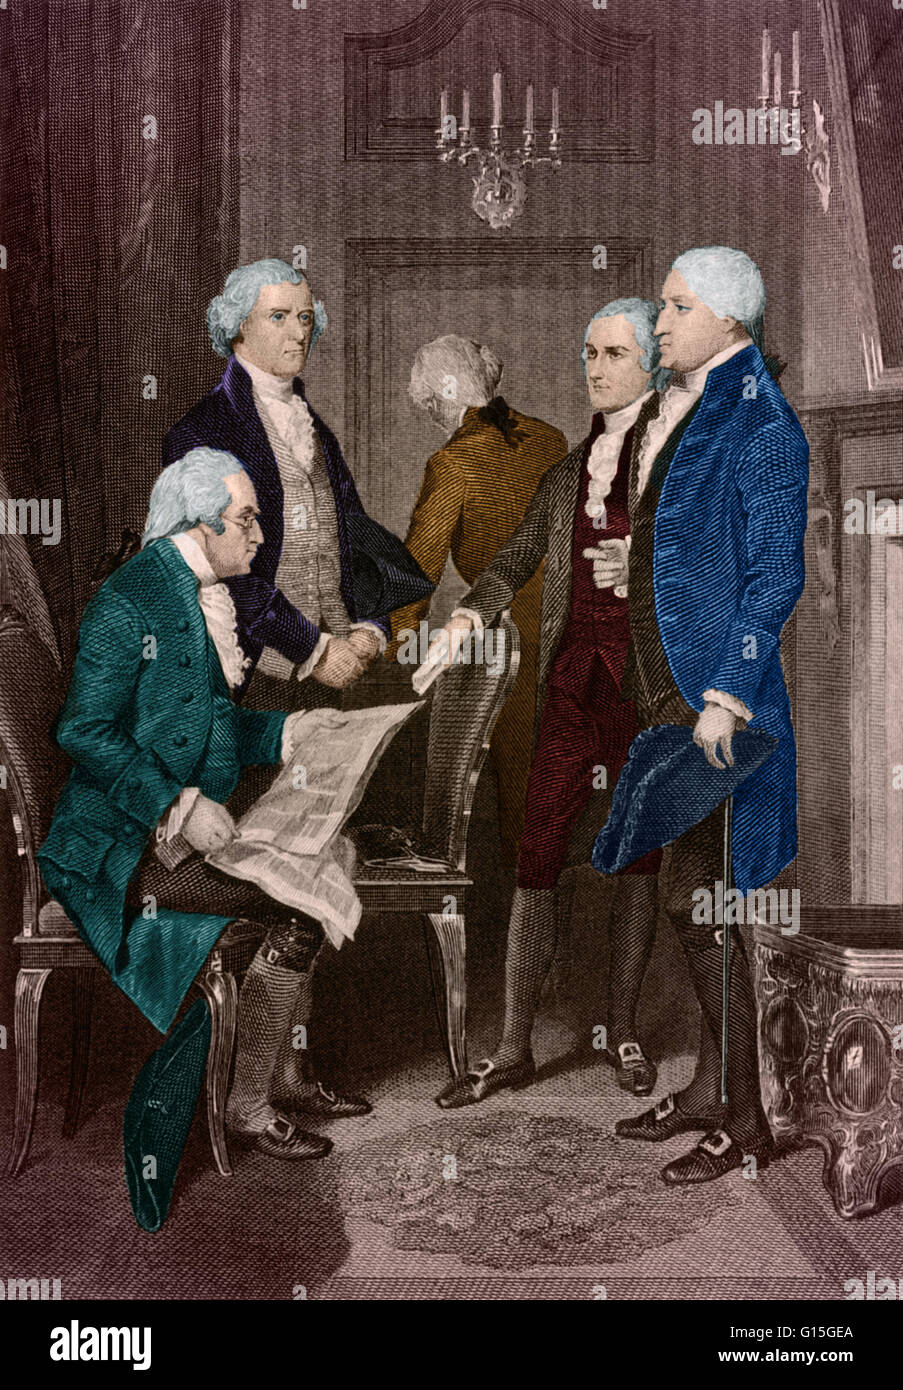 La première administration présidentielle en 1789. De gauche à droite : Secrétaire à la Guerre Henry Knox, Secrétaire d'État Thomas Jefferson, le secrétaire au Trésor Alexander Hamilton et le président George Washington. Banque D'Images